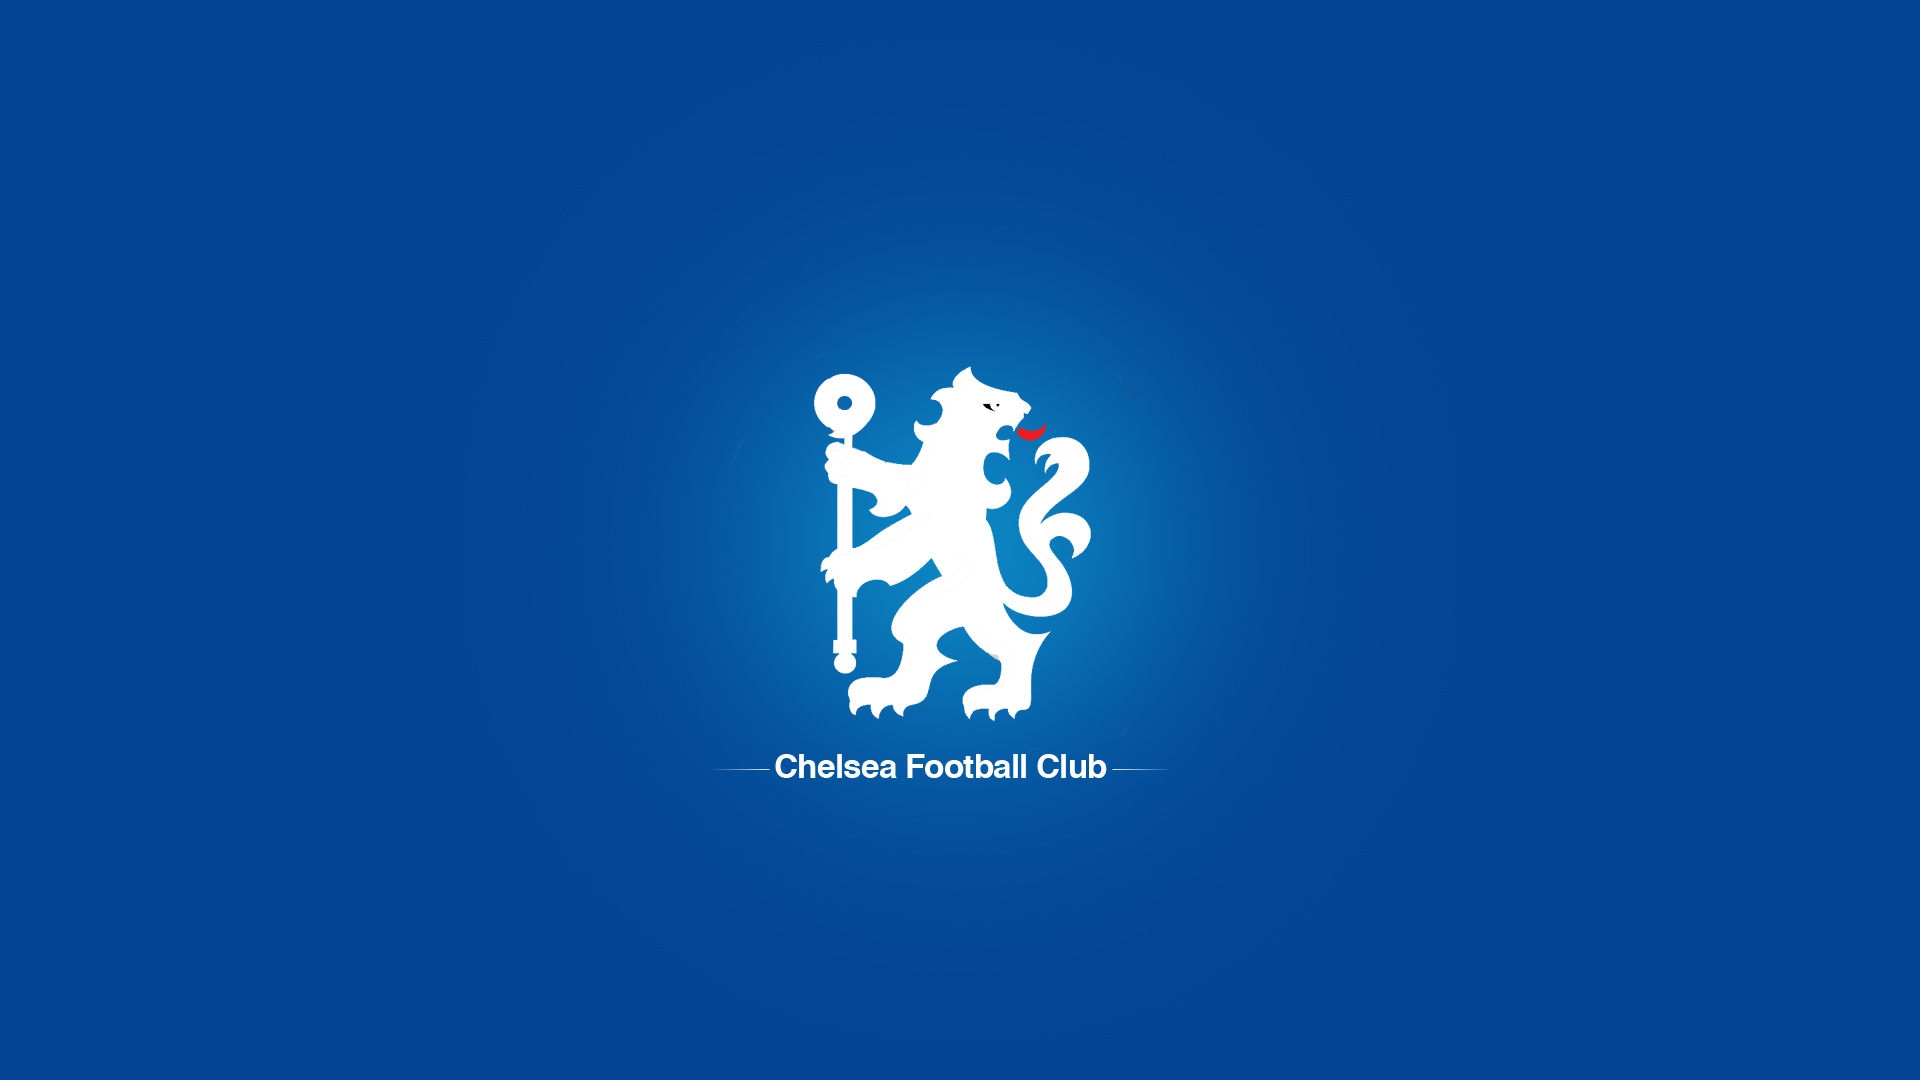 Hd Chelsea Fc Logo Wallpapers Pixelstalk Net